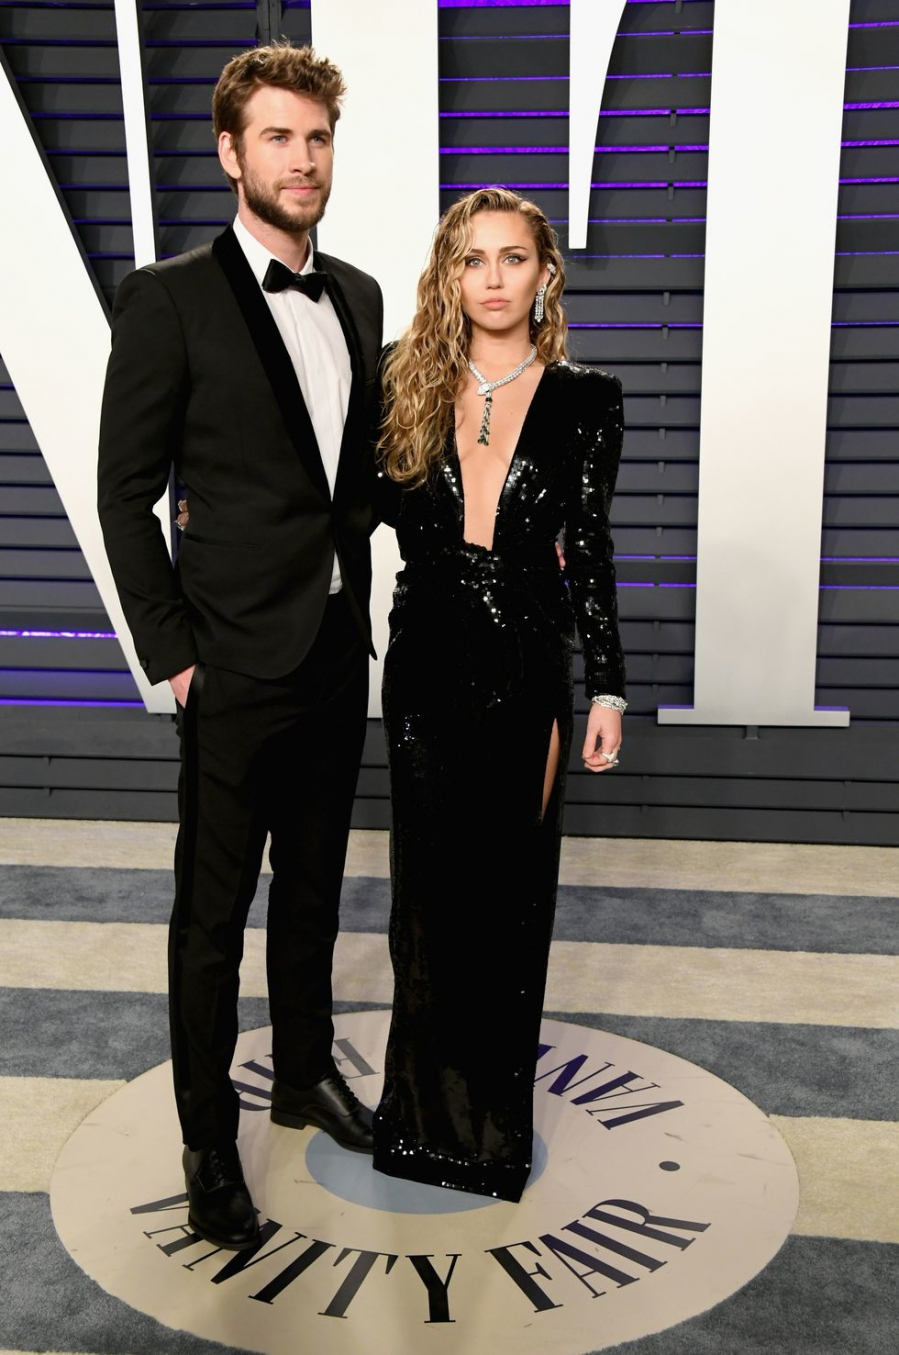 Miley Cyrus nổi bật với chiếc đầm dạ hội đen tuyền đính kim sa lấp lánh thì Liam Hemsworth phong độ ngời ngời trong bộ tuxedo bảnh bao, gọn gàng.